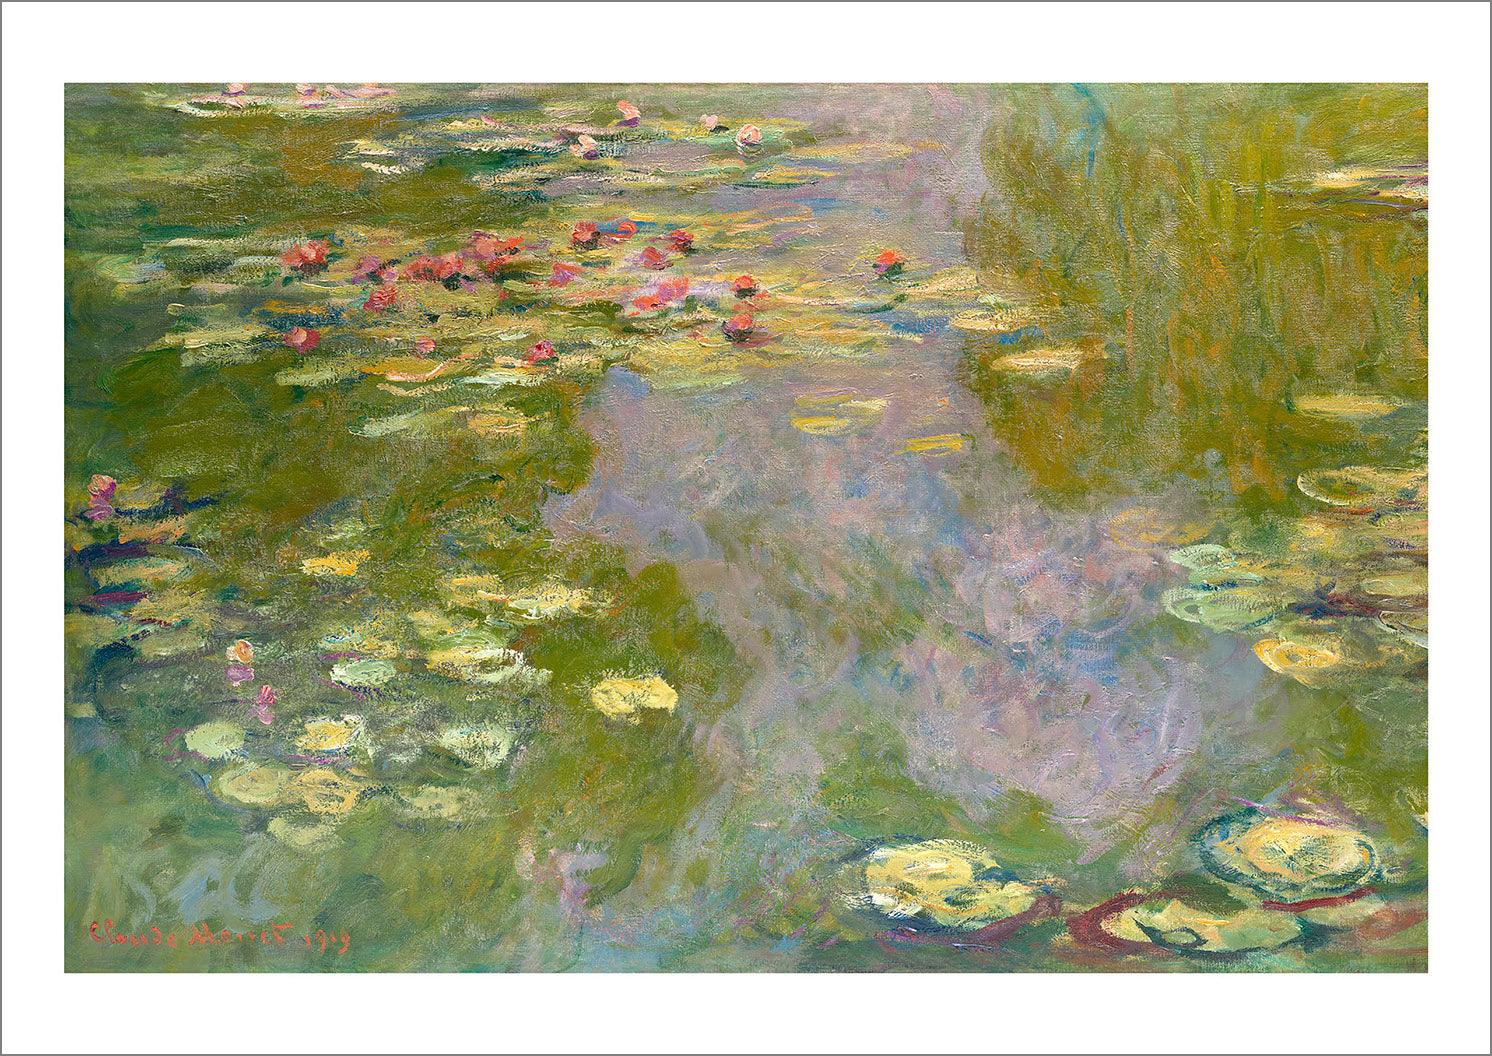 CLAUDE MONET PRINTS: Water Lilies, Fine Art Reproductions - Pimlico Prints